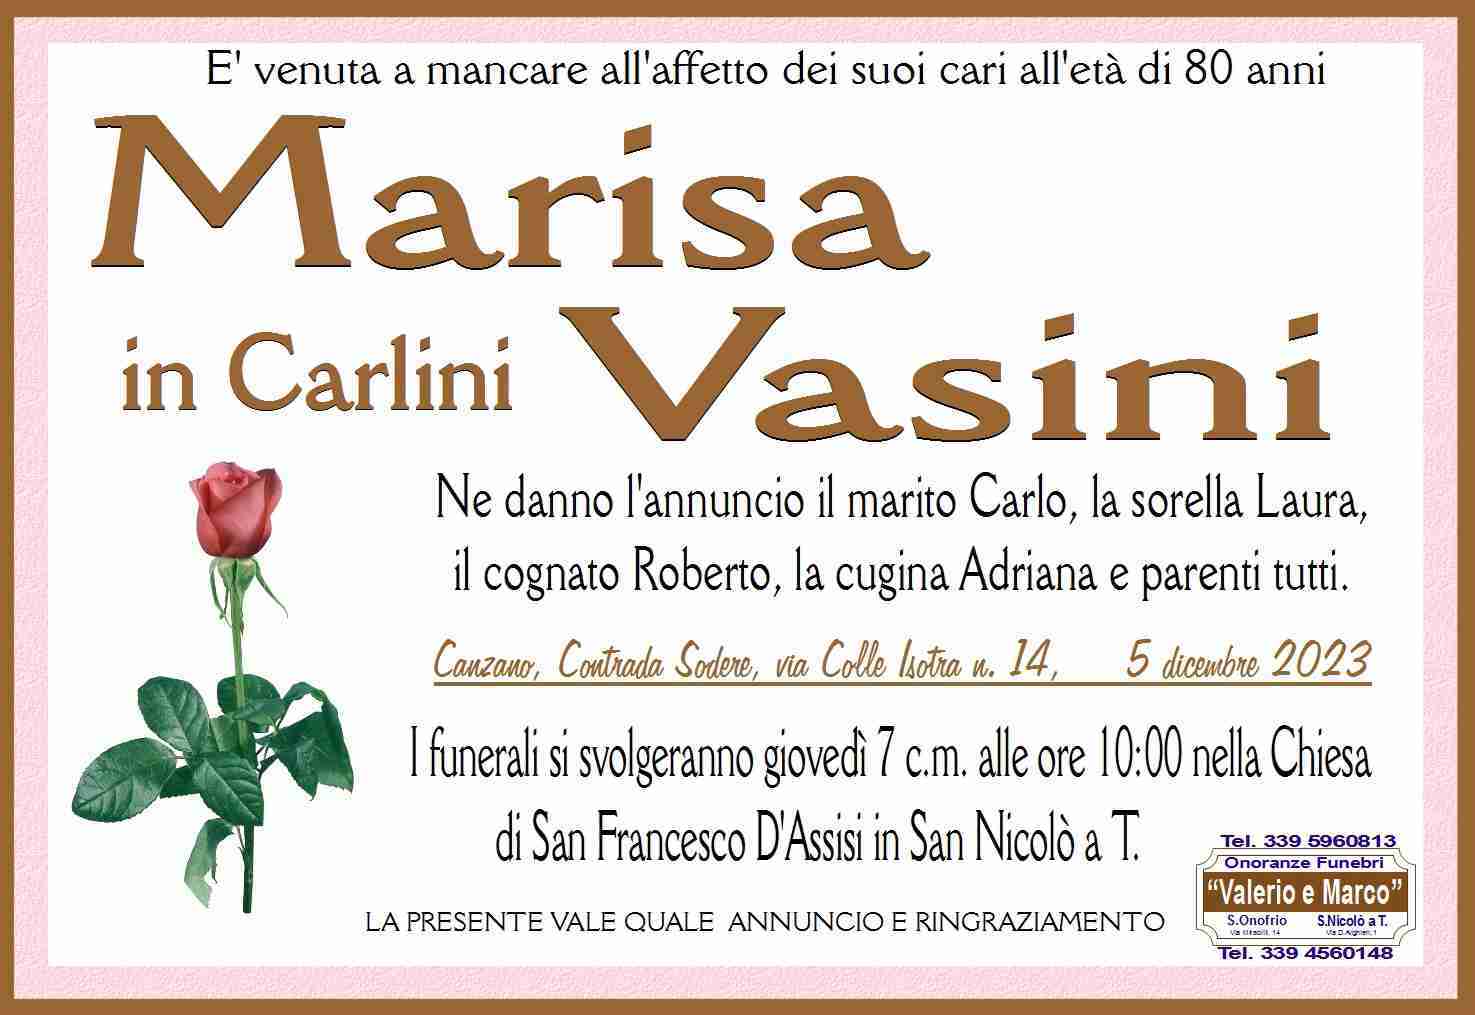 Marisa Vasini